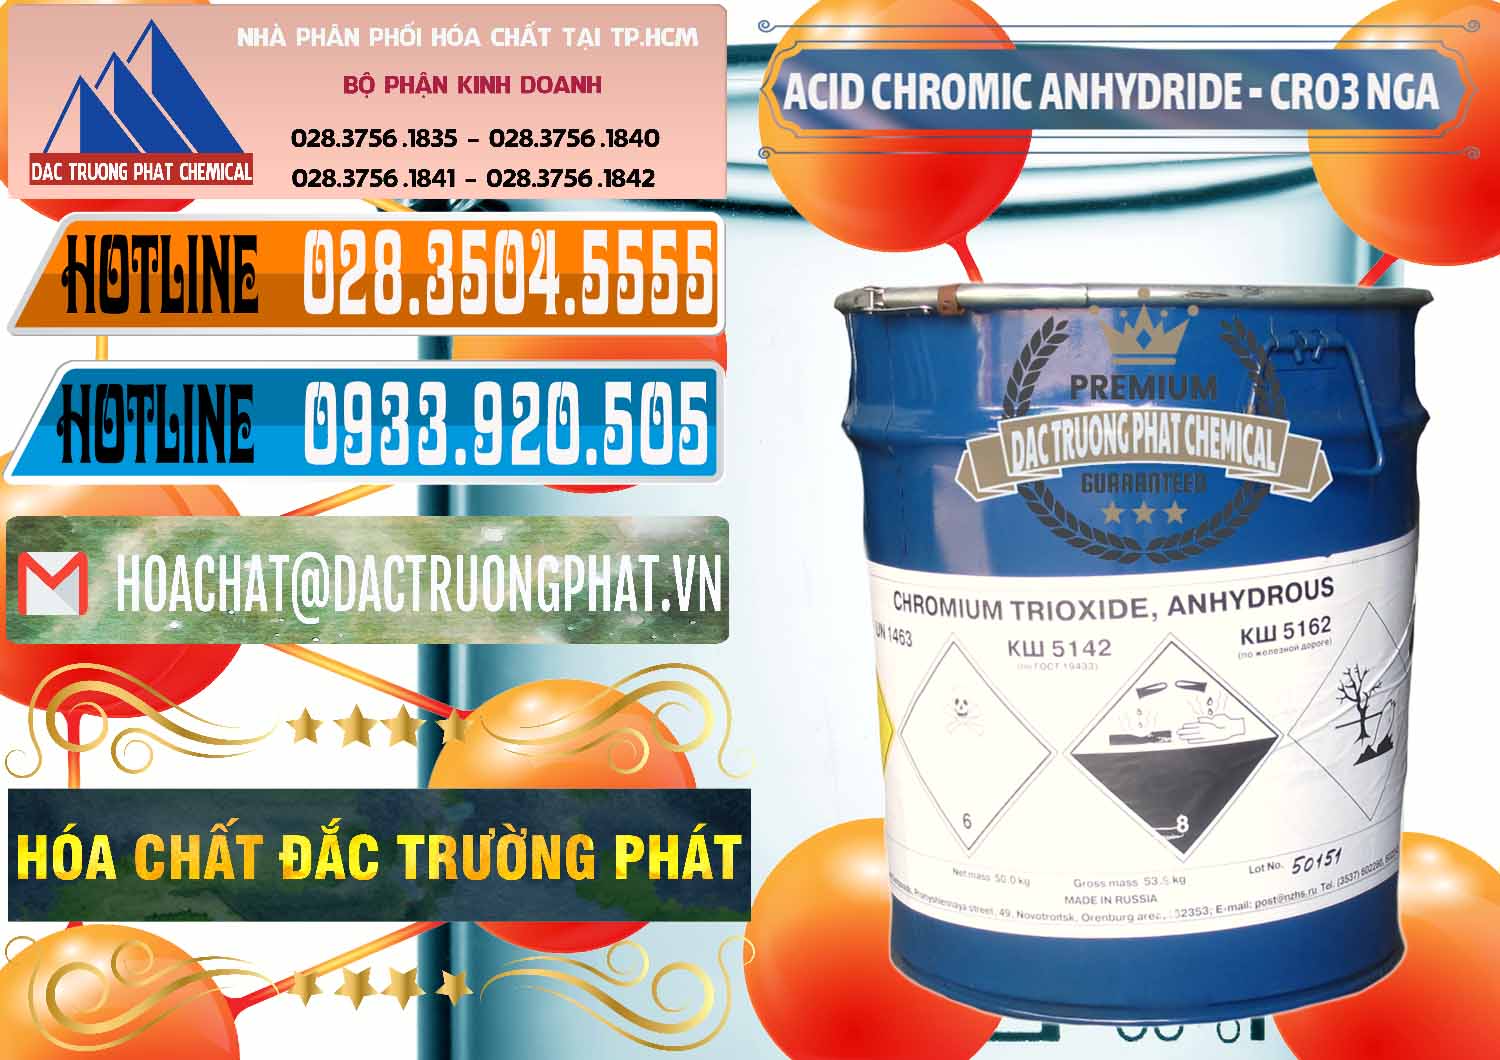 Đơn vị cung cấp và bán Acid Chromic Anhydride - Cromic CRO3 Nga Russia - 0006 - Đơn vị kinh doanh - cung cấp hóa chất tại TP.HCM - stmp.net